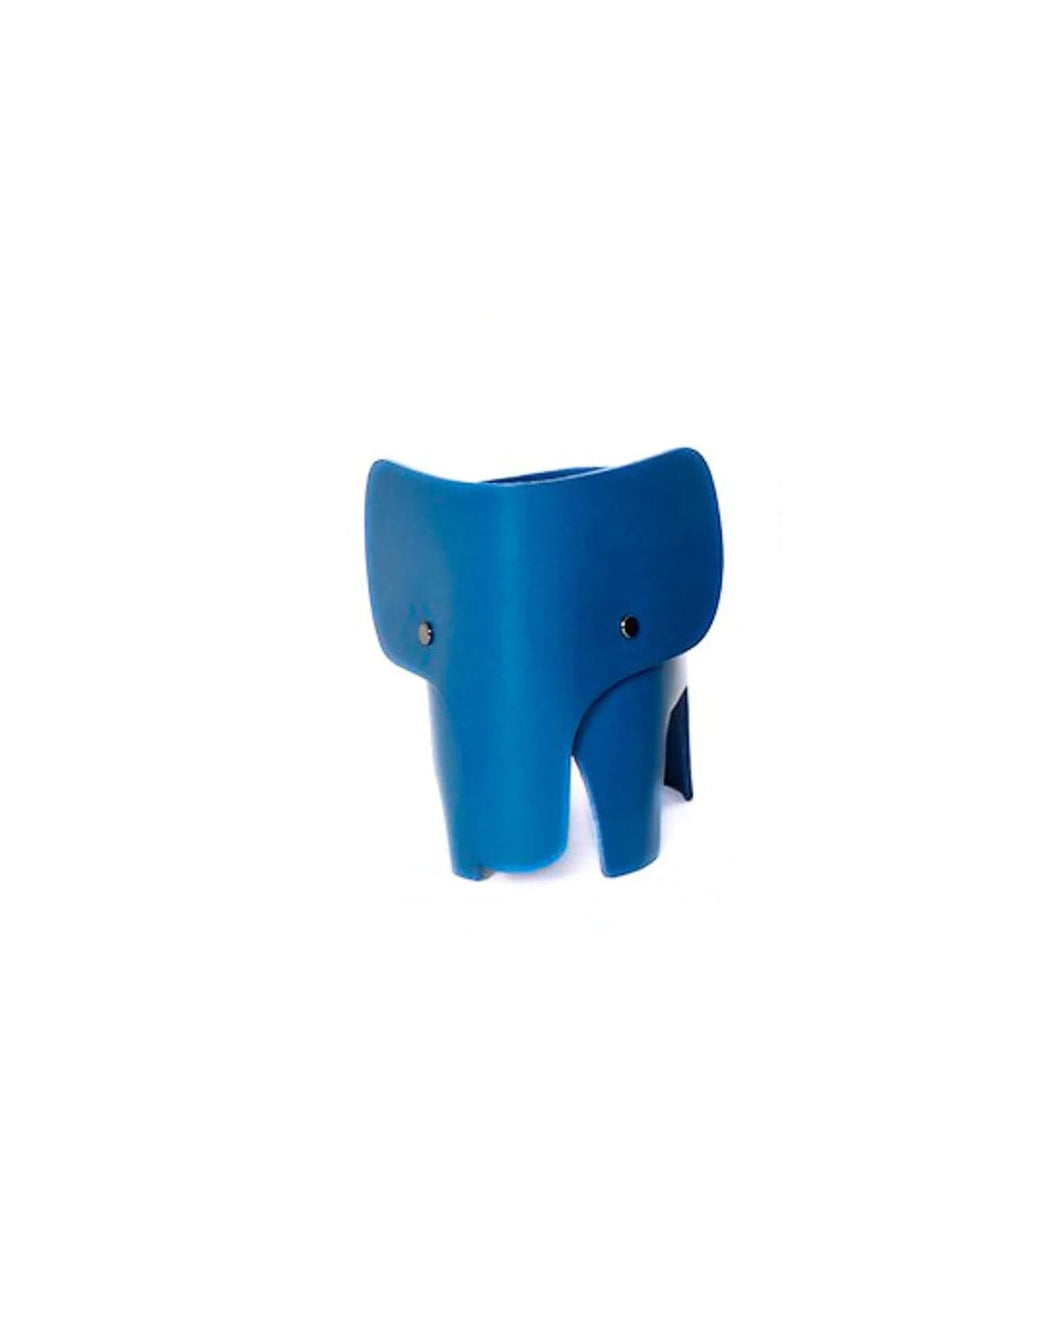 EO Decor Blue EO Lamp Elephant